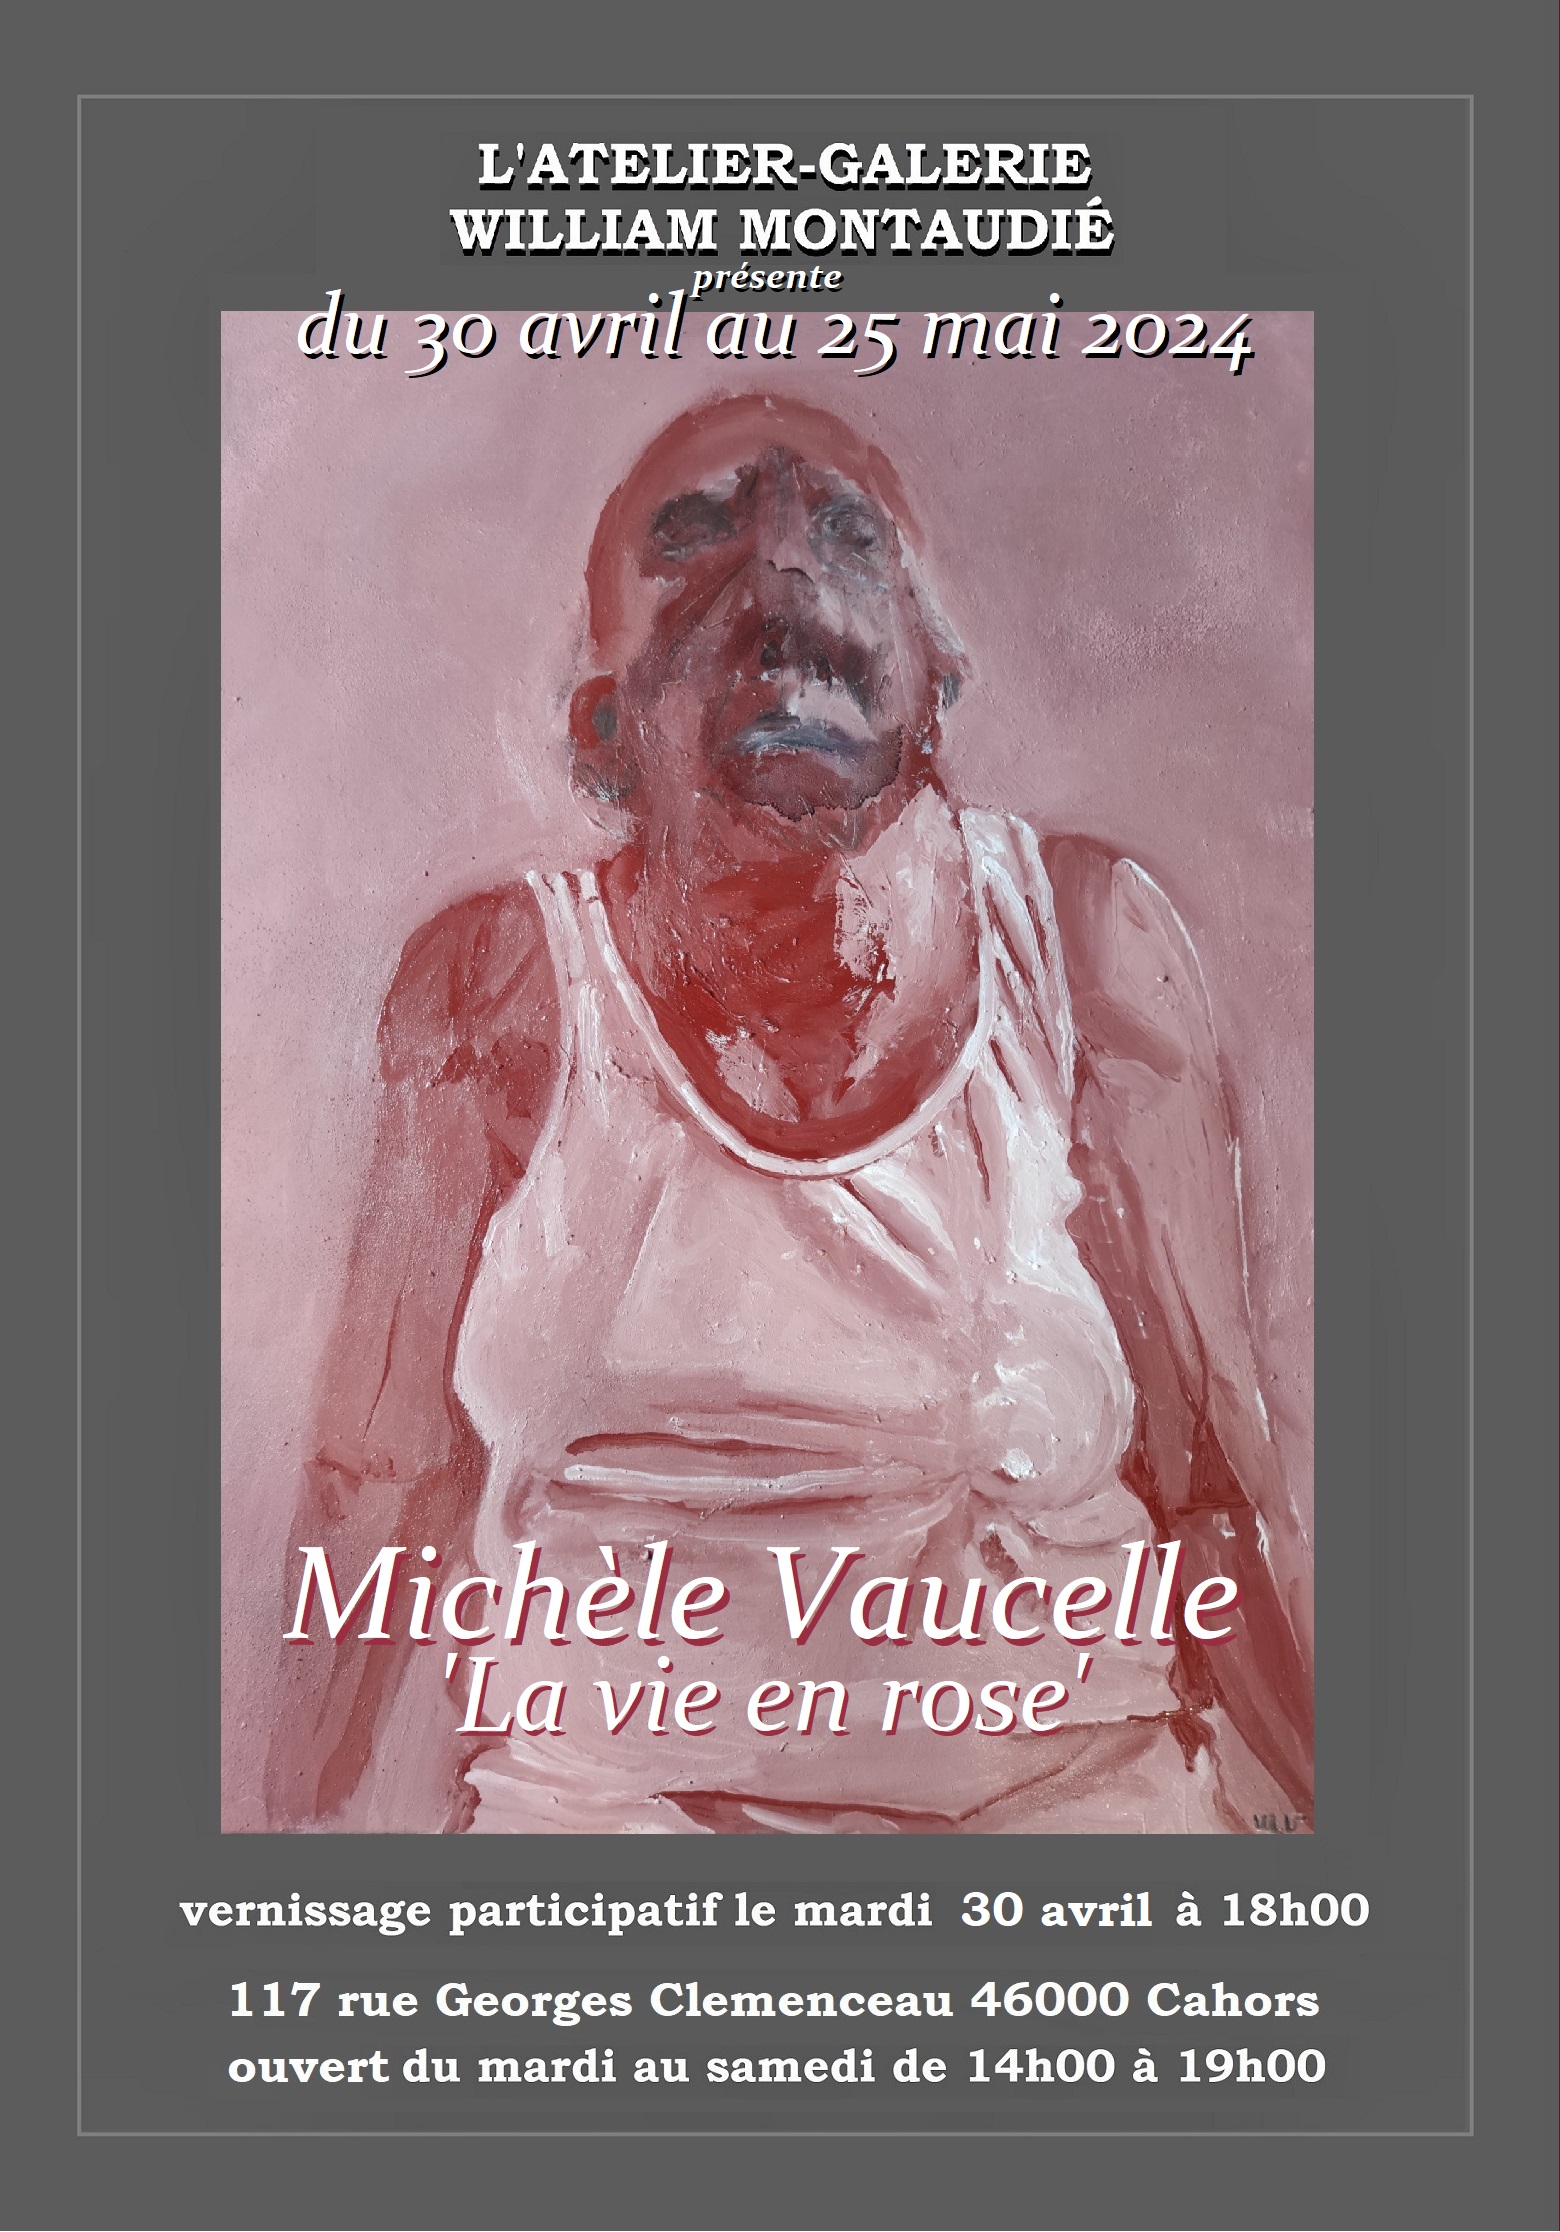 Exposition de Michèle Vaucelle: "La vie en rose"